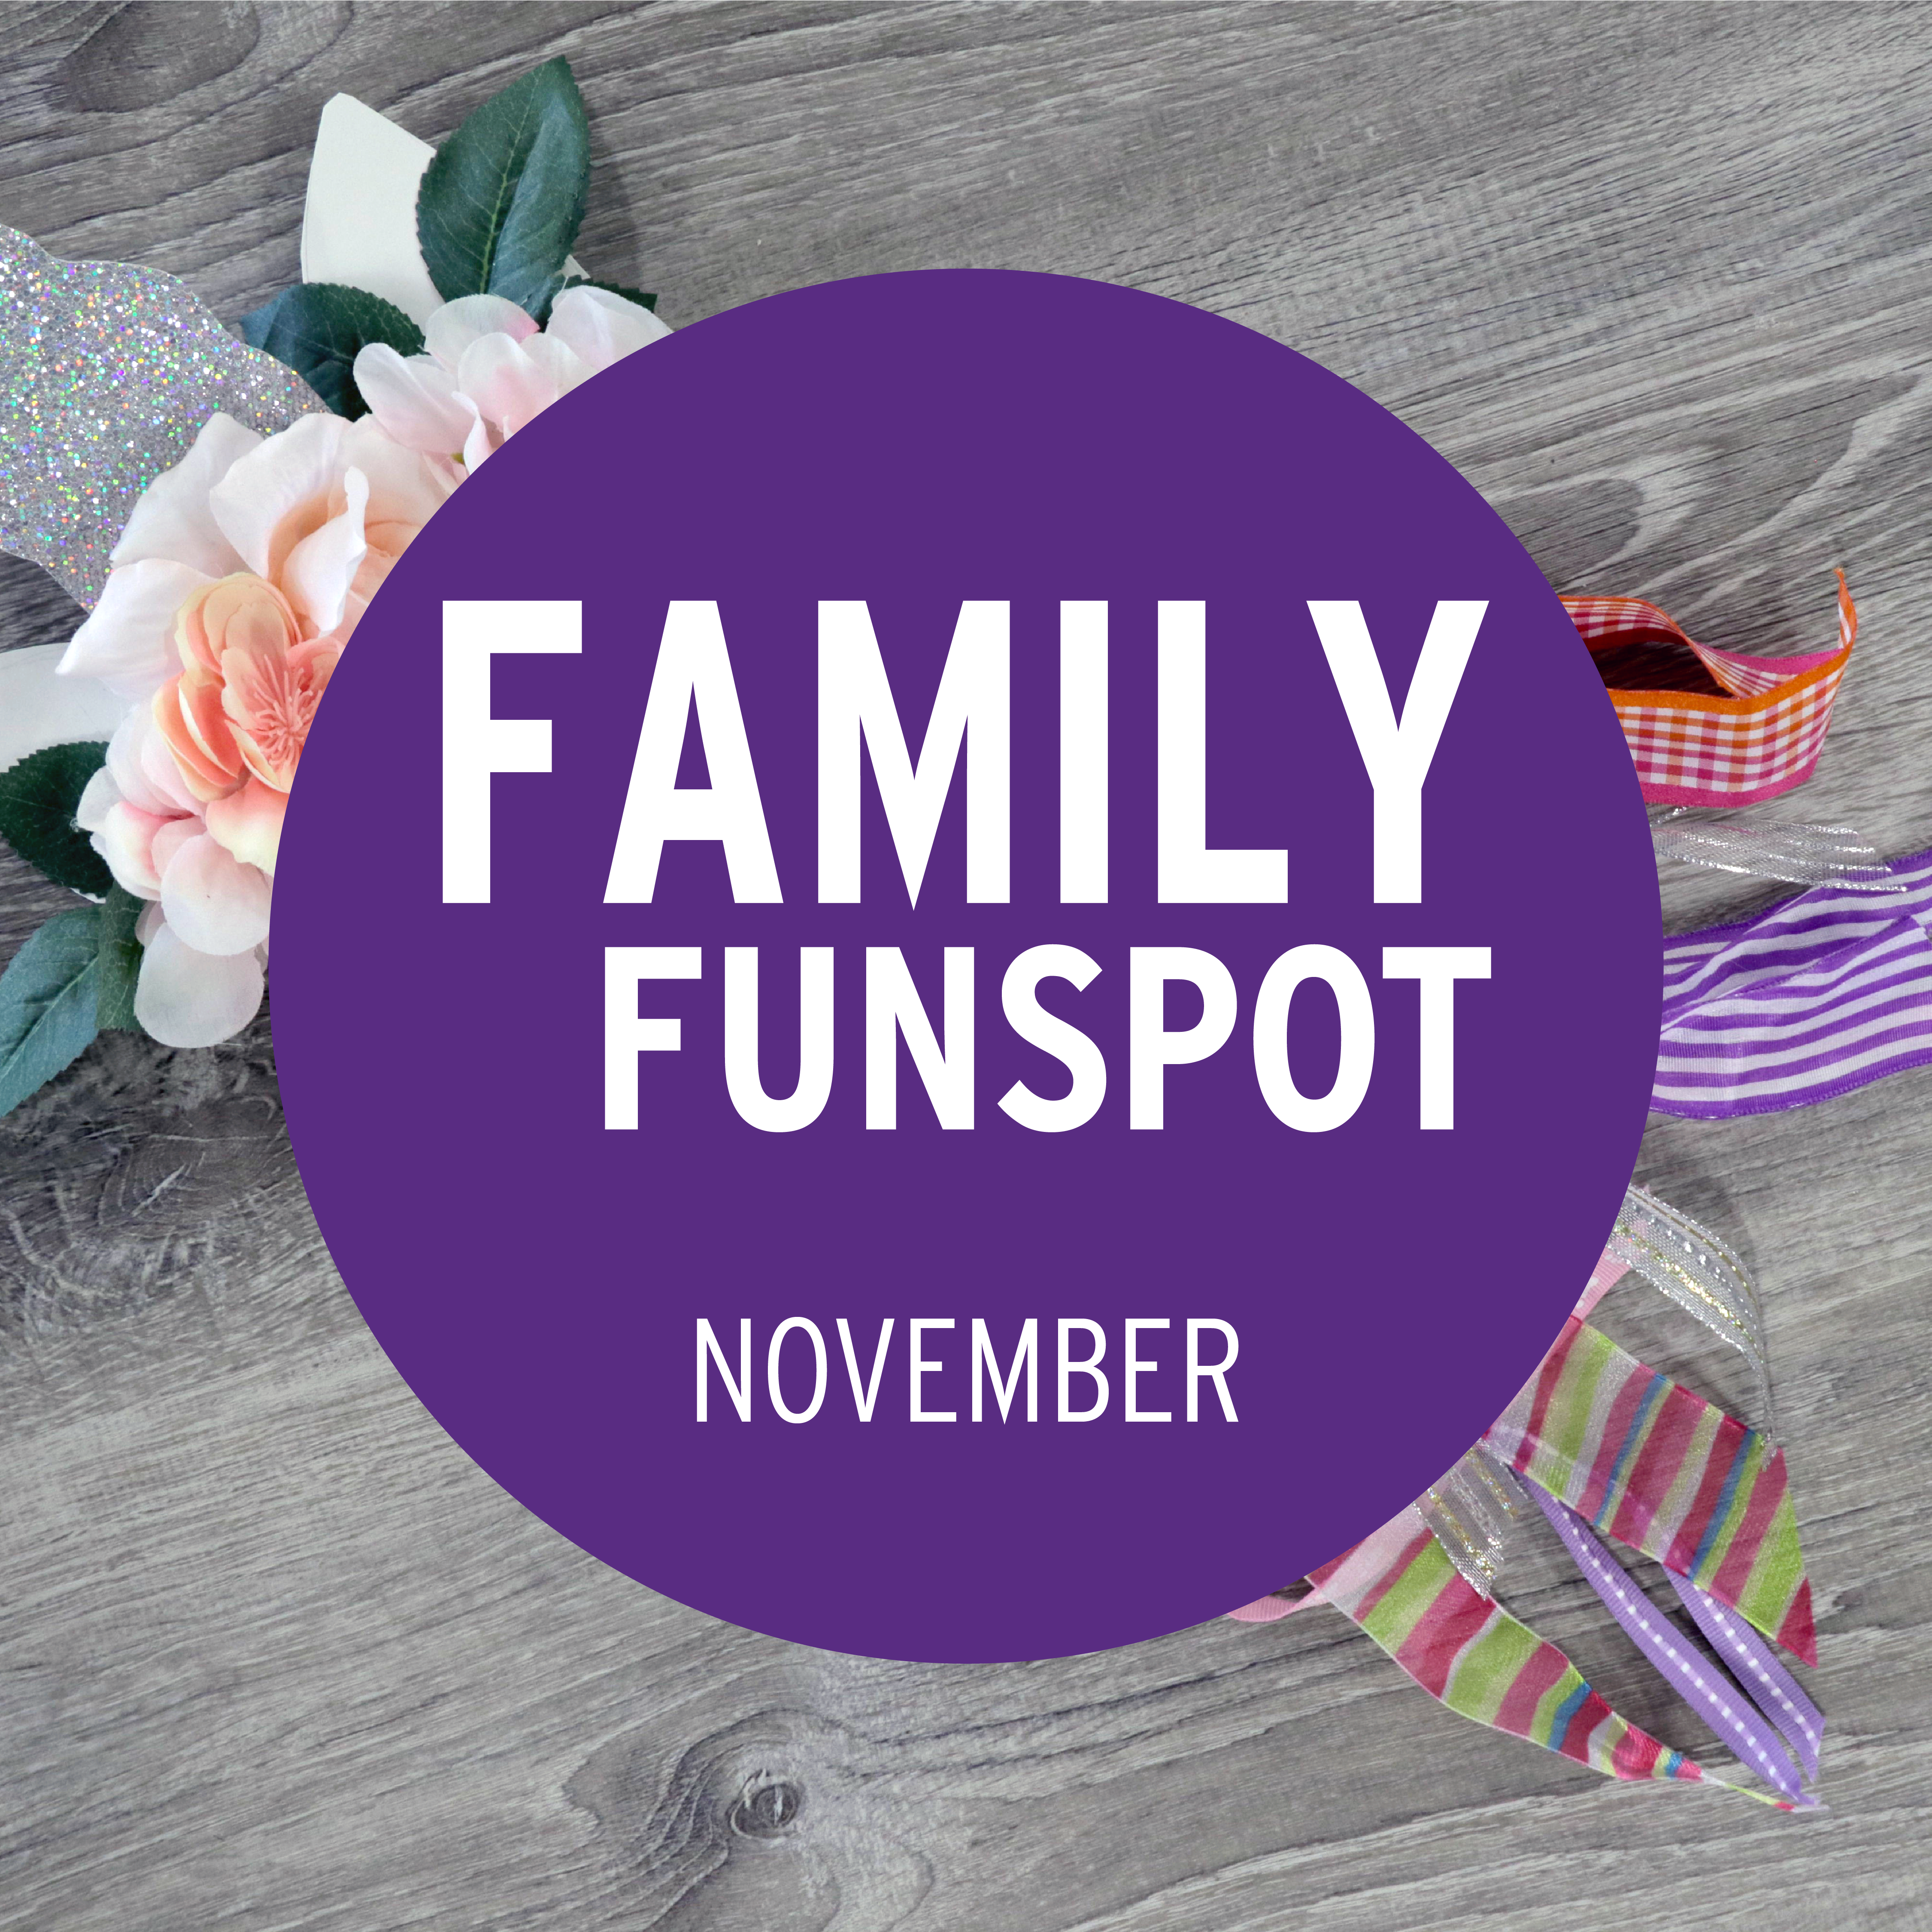 Family FunSpot November